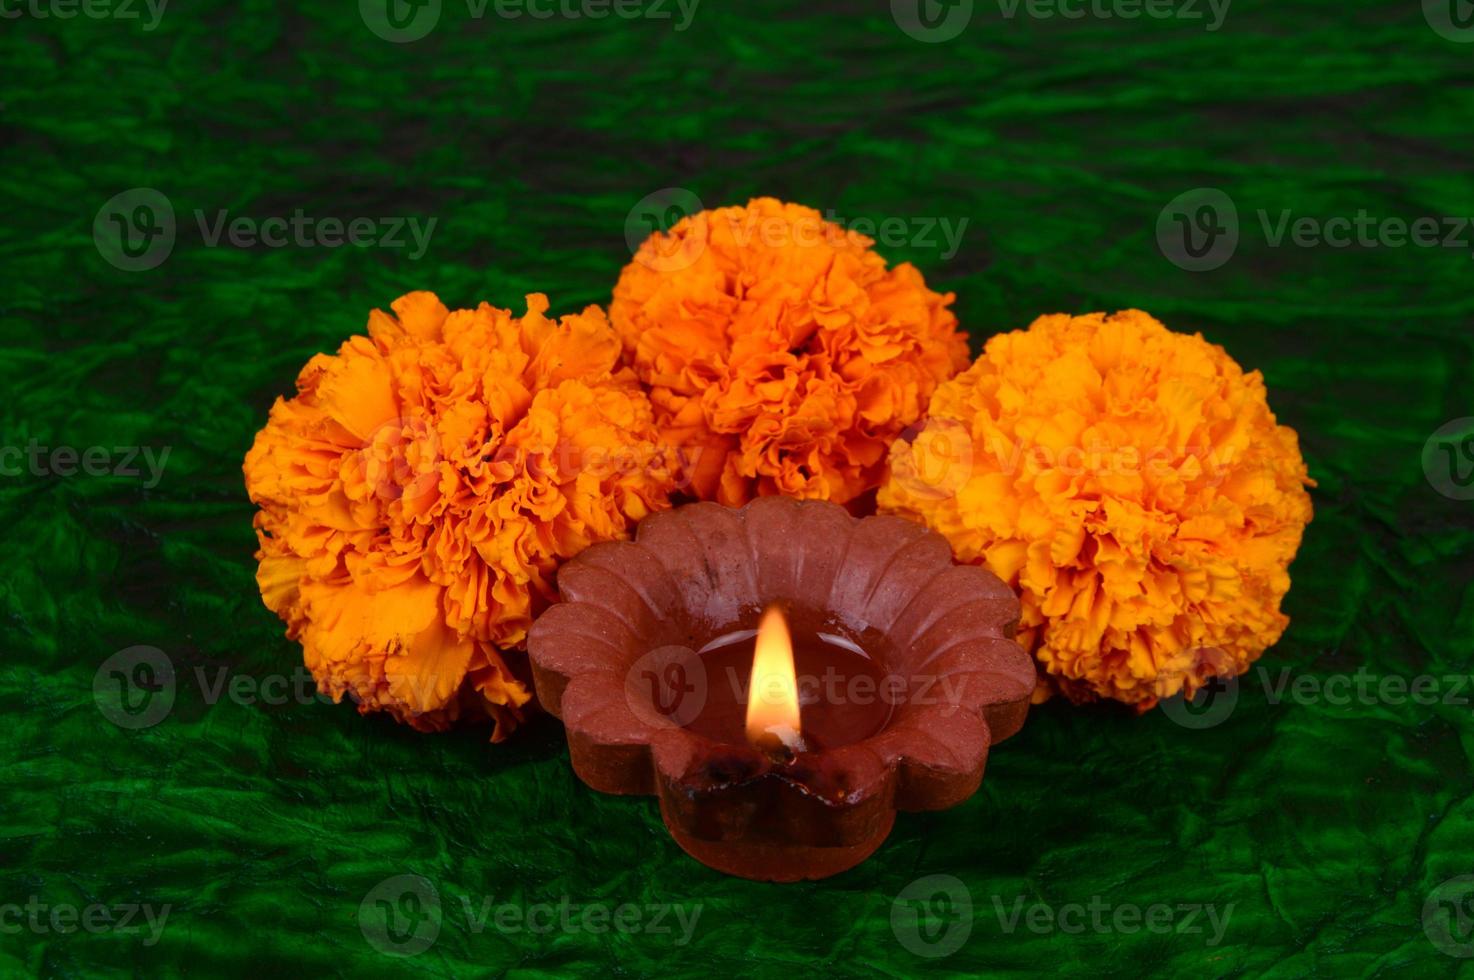 glad diwali - diya-lampor tänds under diwali-firandet. färgglada och dekorerade lyktor tänds på natten vid detta tillfälle med blomma rangoli, godis och presenter. foto